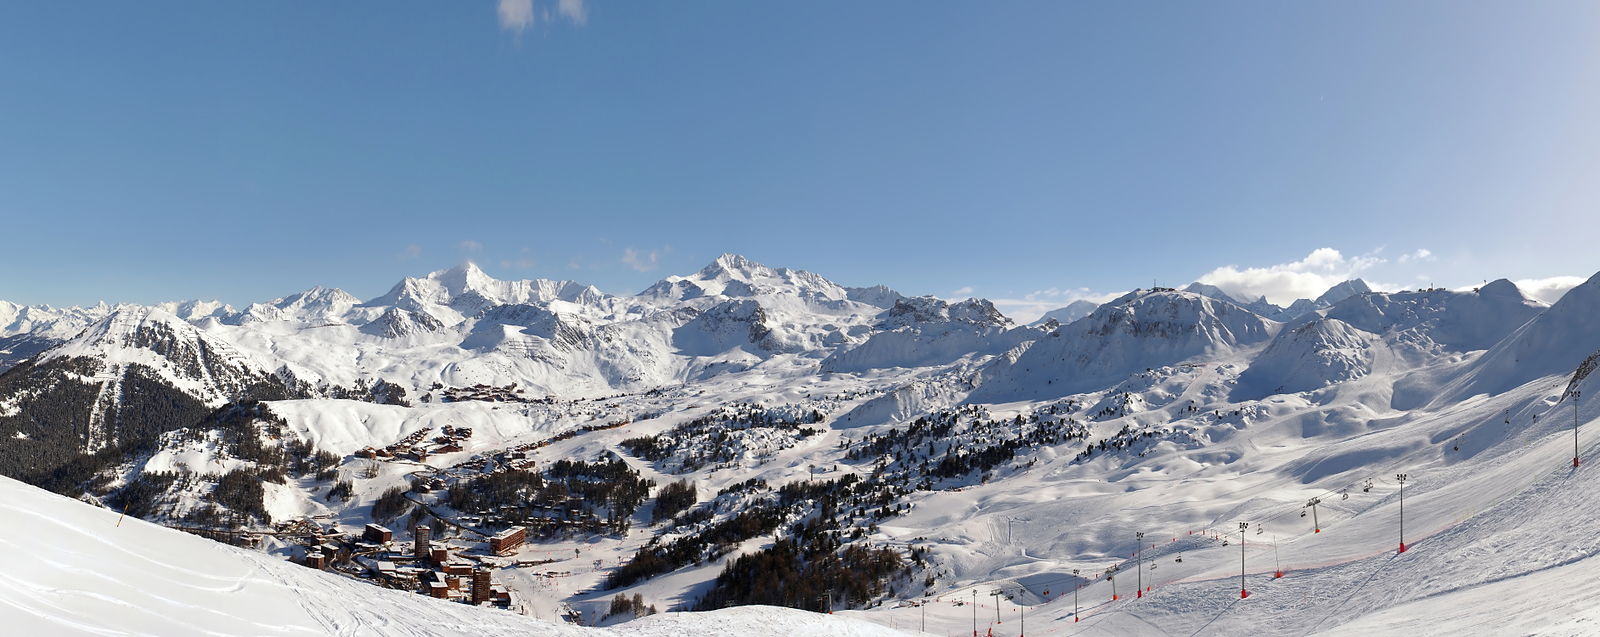 La Plagne Winter Panorama